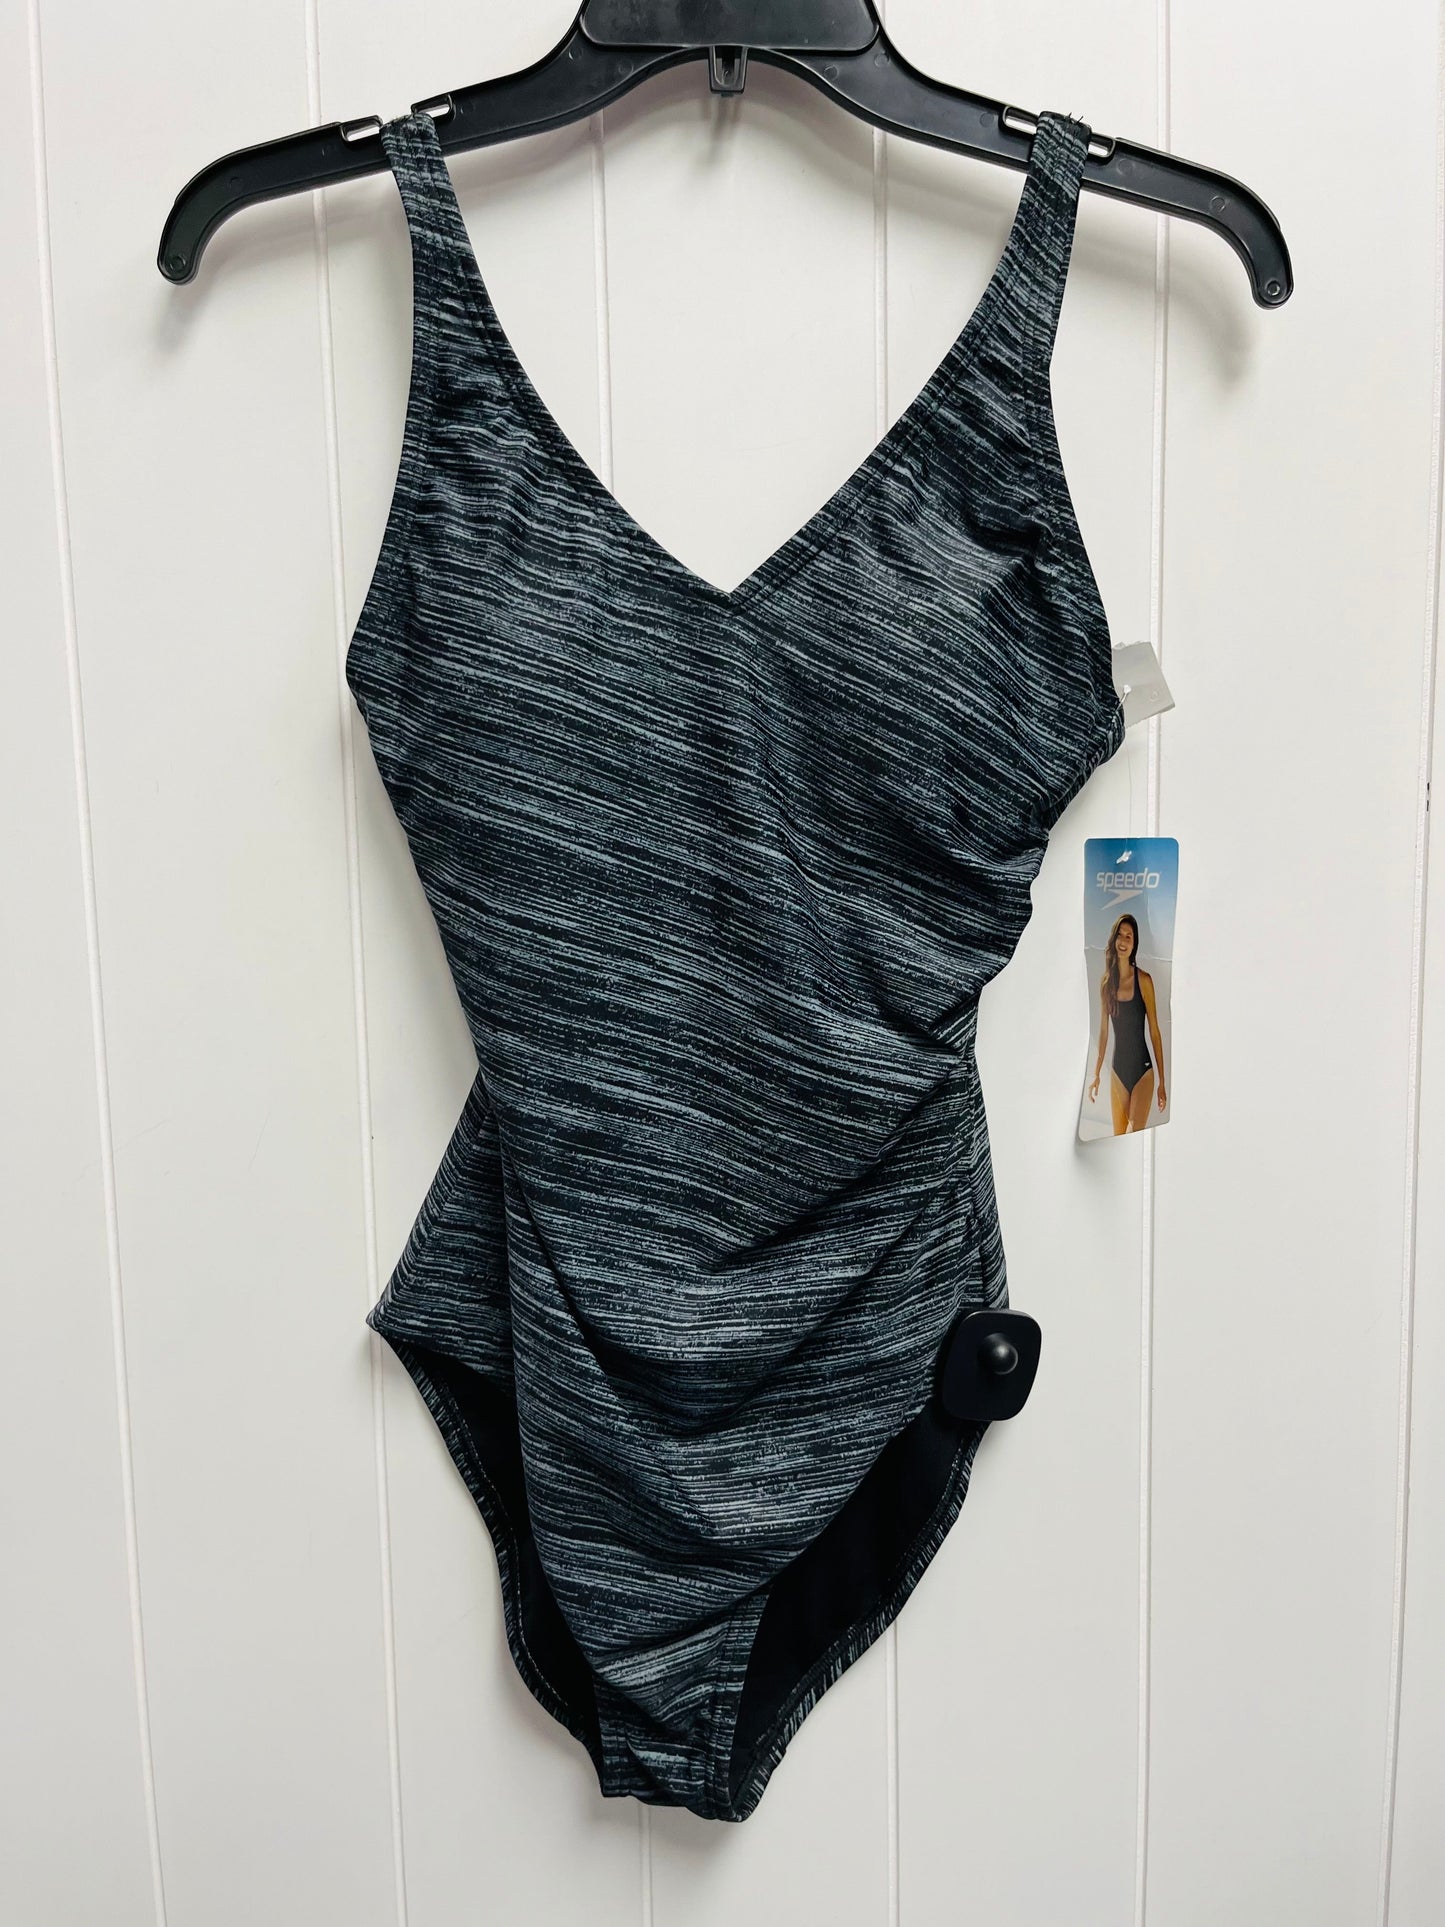 Grey Swimsuit SPEEDO, Size 6